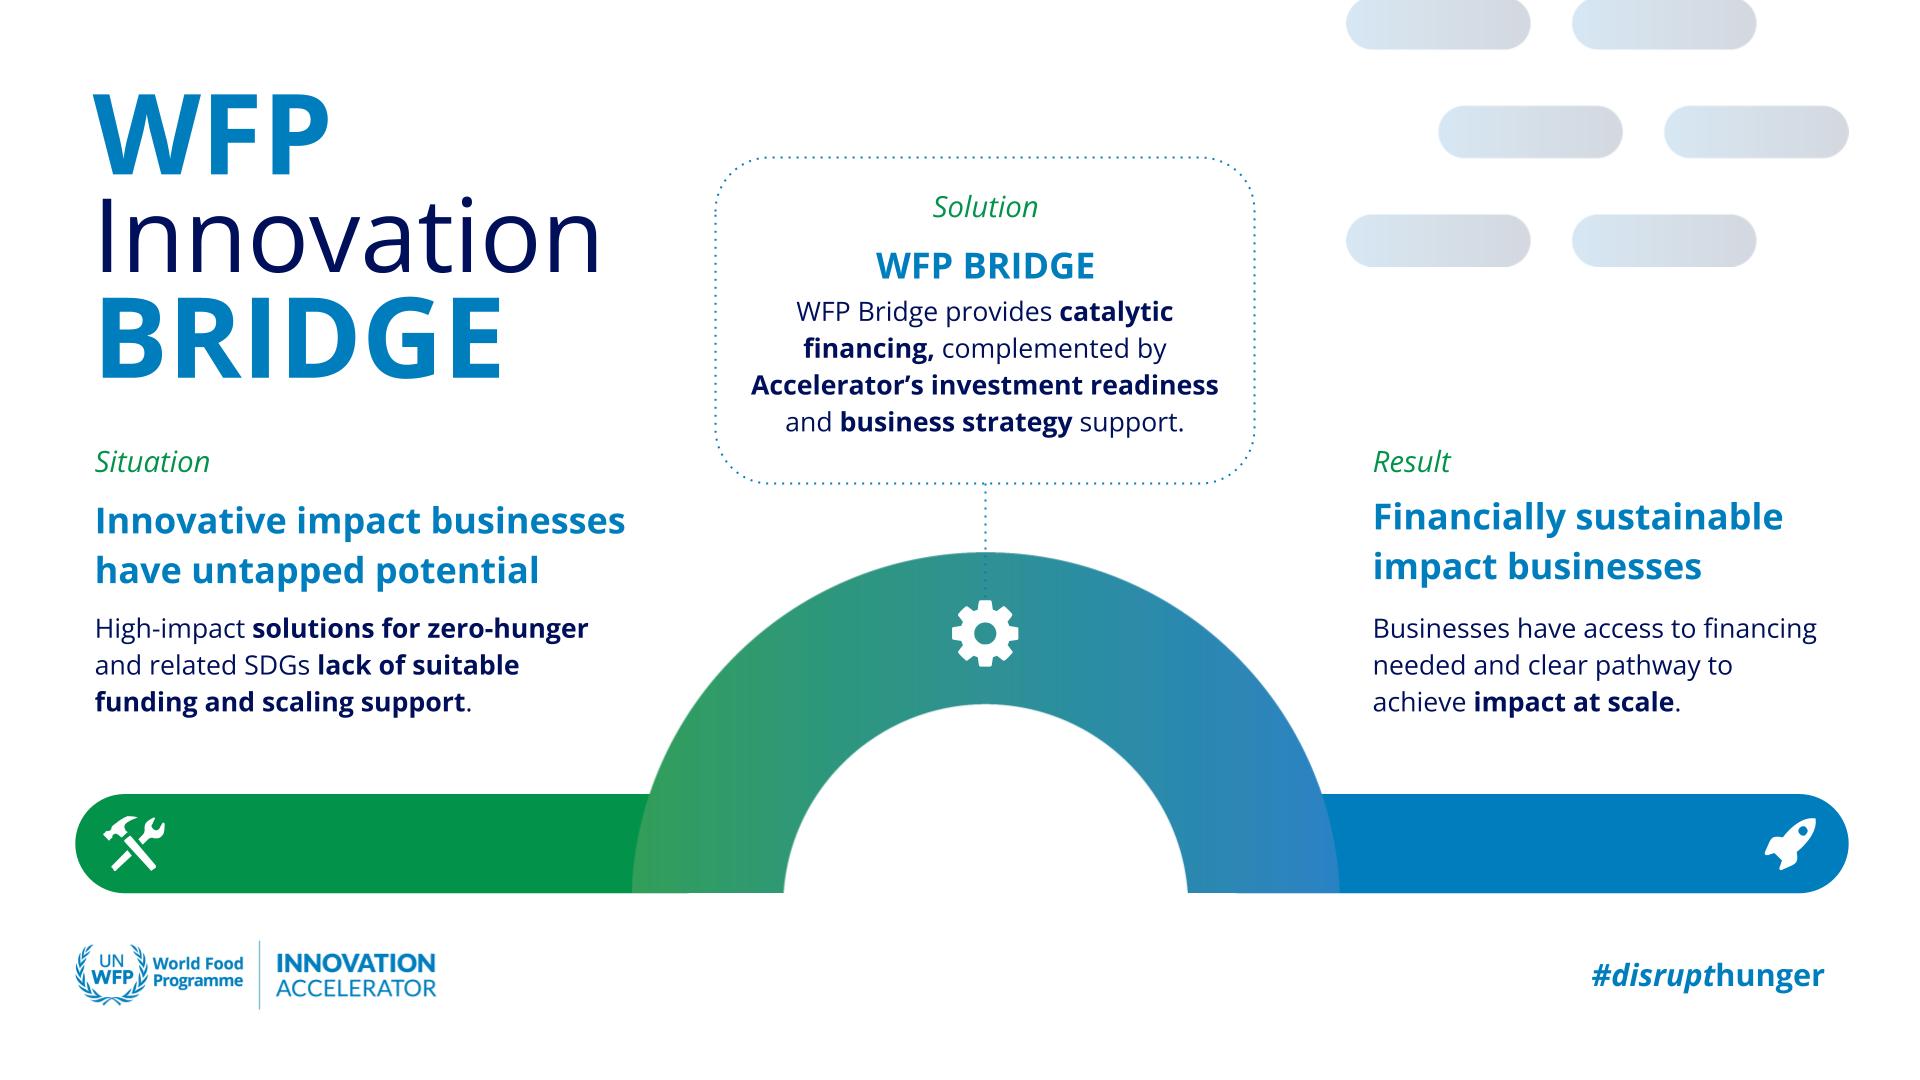 WFP Innovation BRIDGE visual explainer.